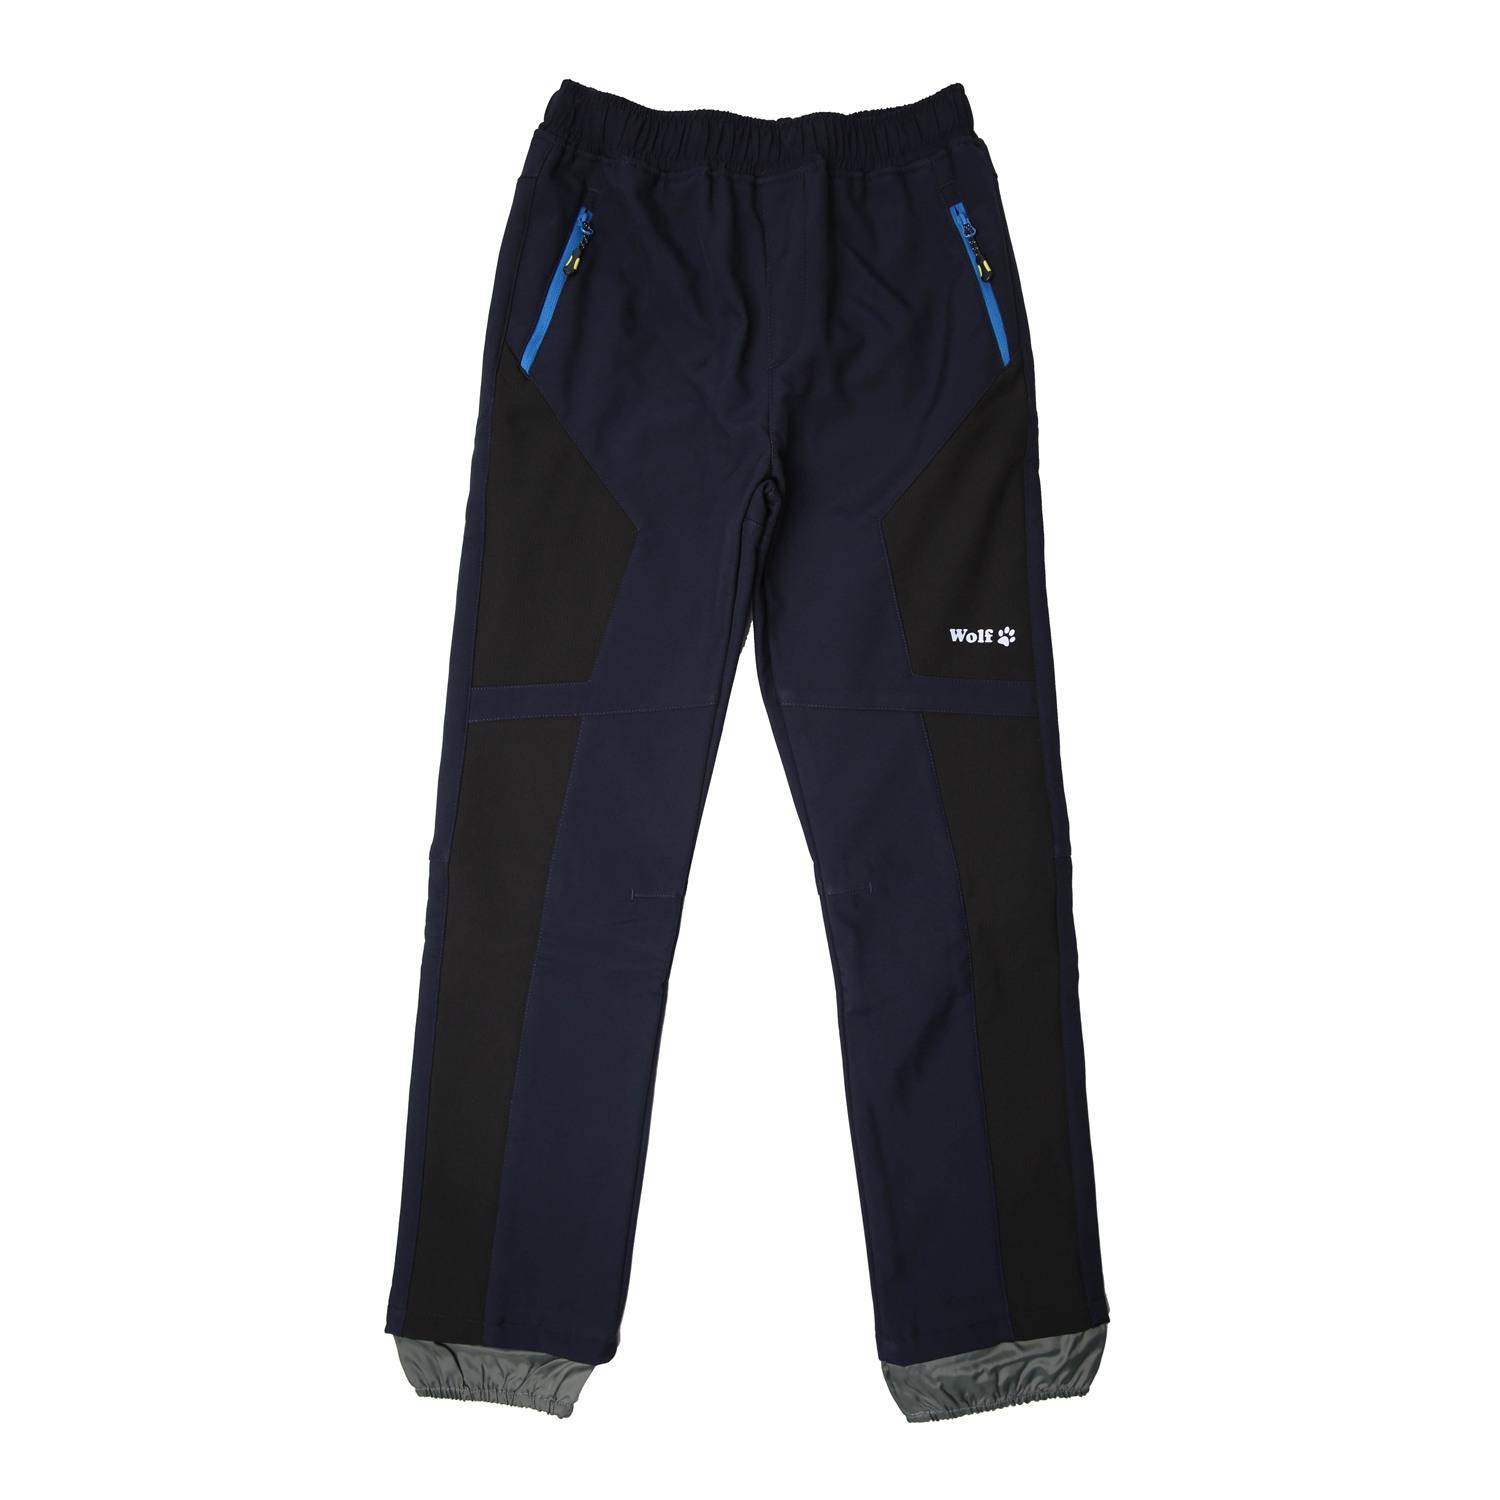 Chlapecké softshellové kalhoty, zateplené - Wolf B2394, tmavě modrá Barva: Modrá tmavě, Velikost: 116